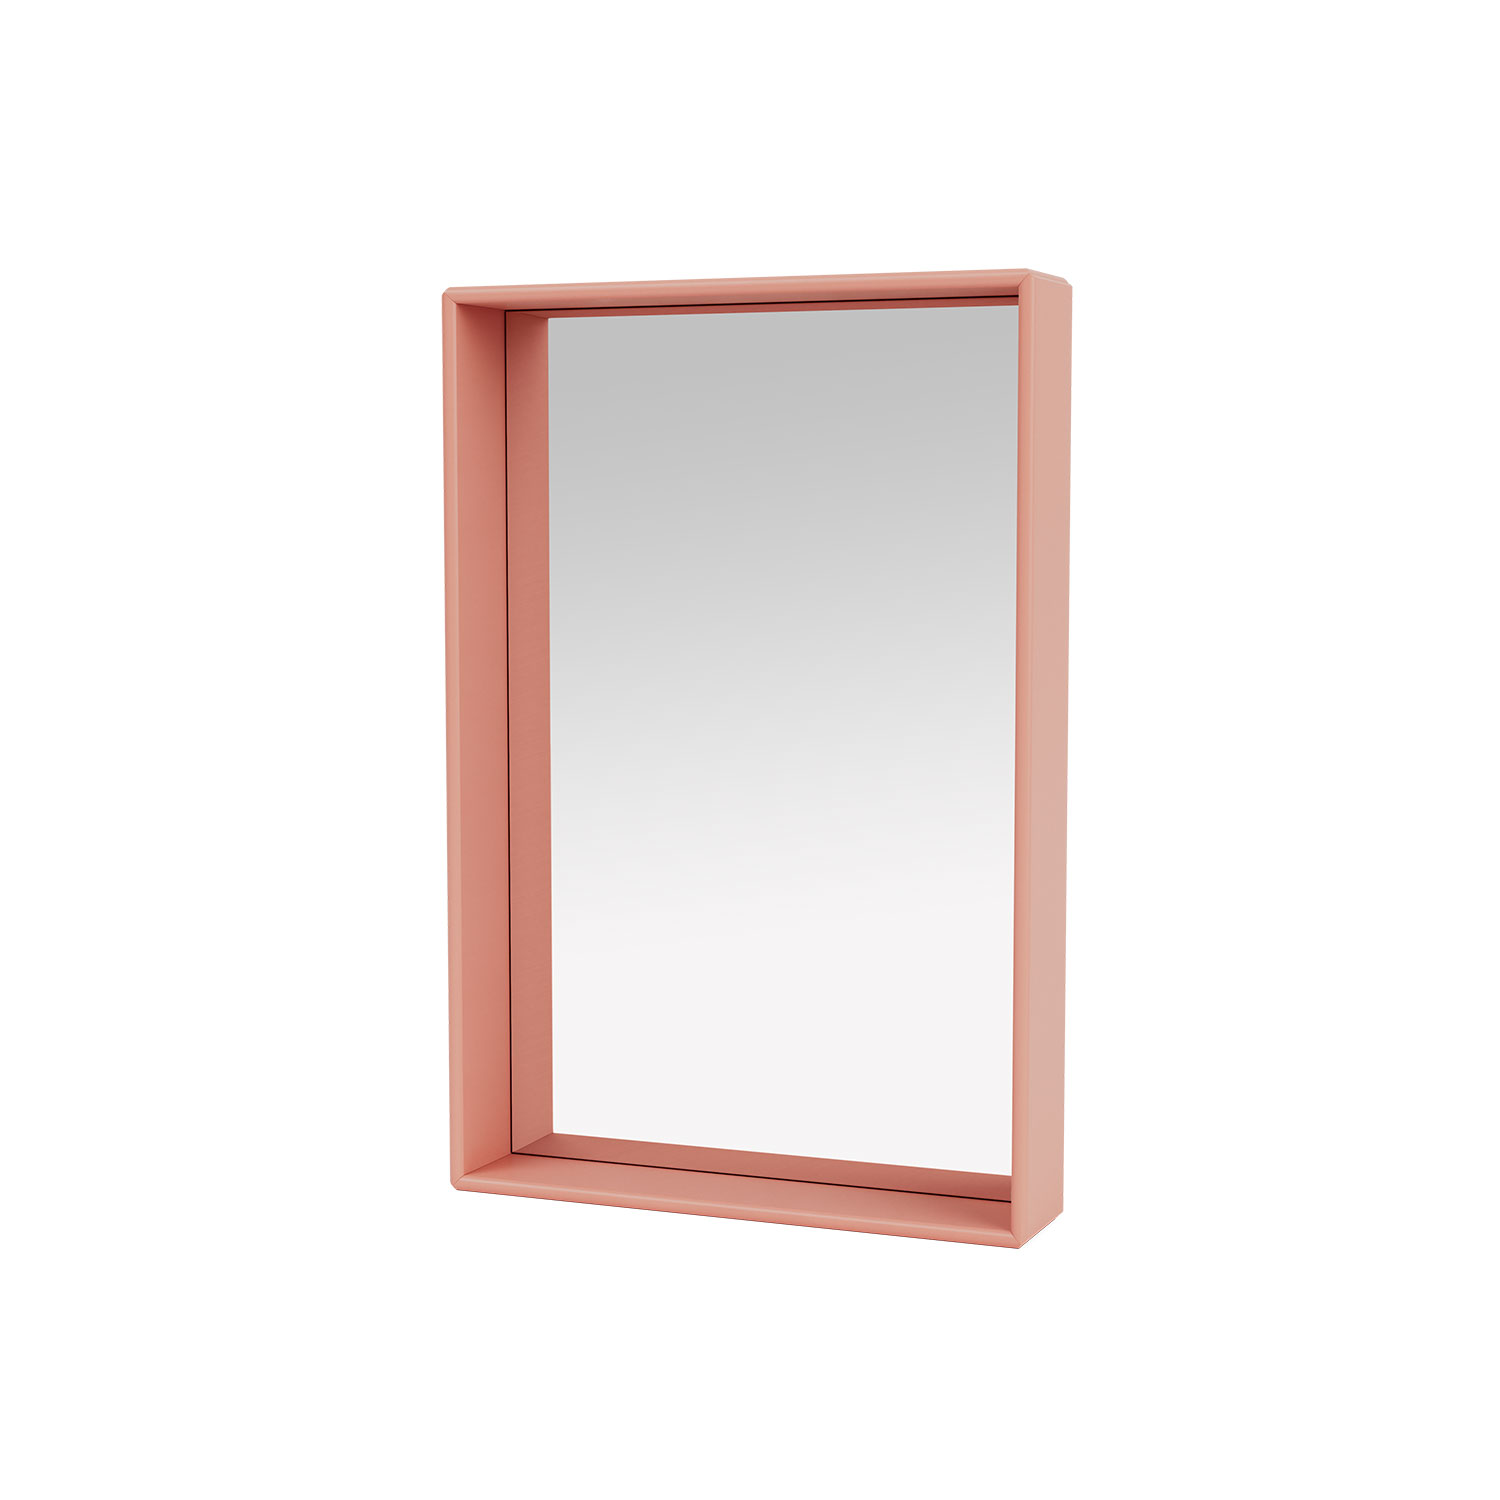 SHELFIE mirror with shelf, Rhubarb